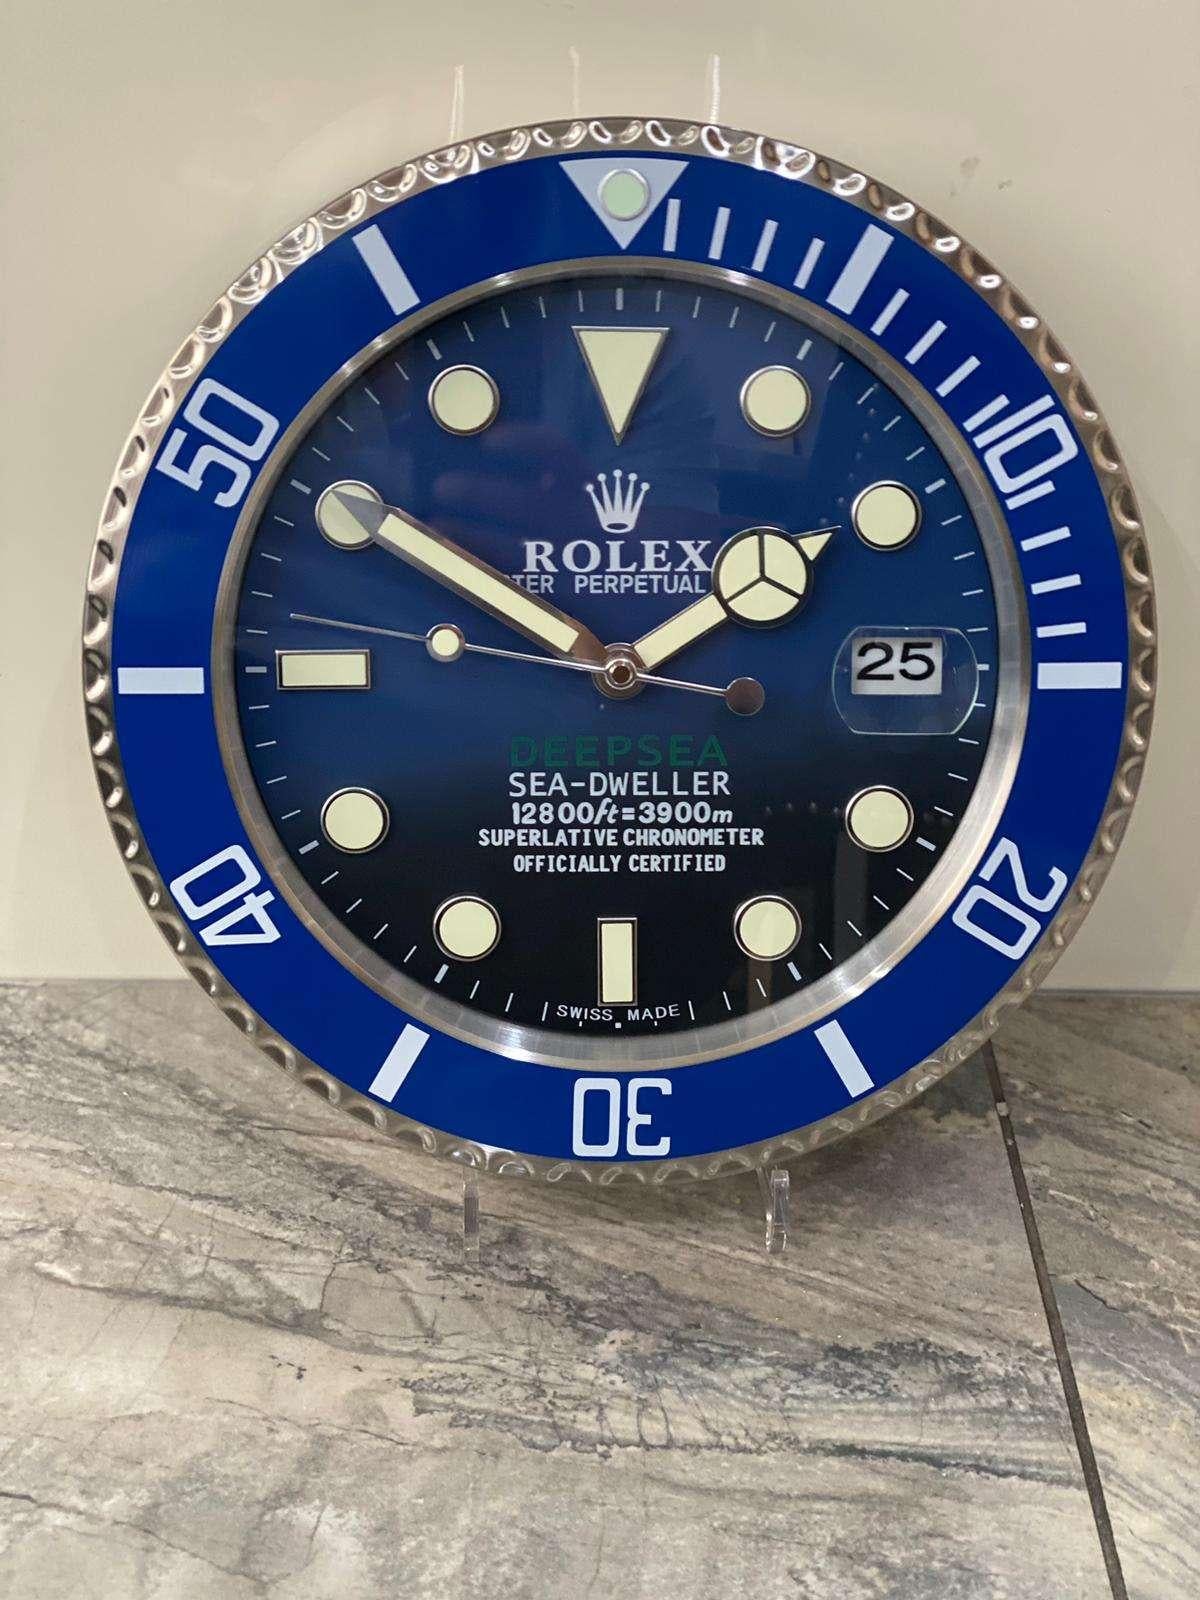 ROLEX offiziell zertifizierte Oyster Perpetual Blue Deepsea Sea Dweller Wanduhr, Deepsea Sea 
Guter Zustand, funktionstüchtig.
Lume Streifen Sweeping Quartz Bewegung angetrieben durch eine einzelne AA-Batterie.
Die Abmessungen der Uhr betragen etwa